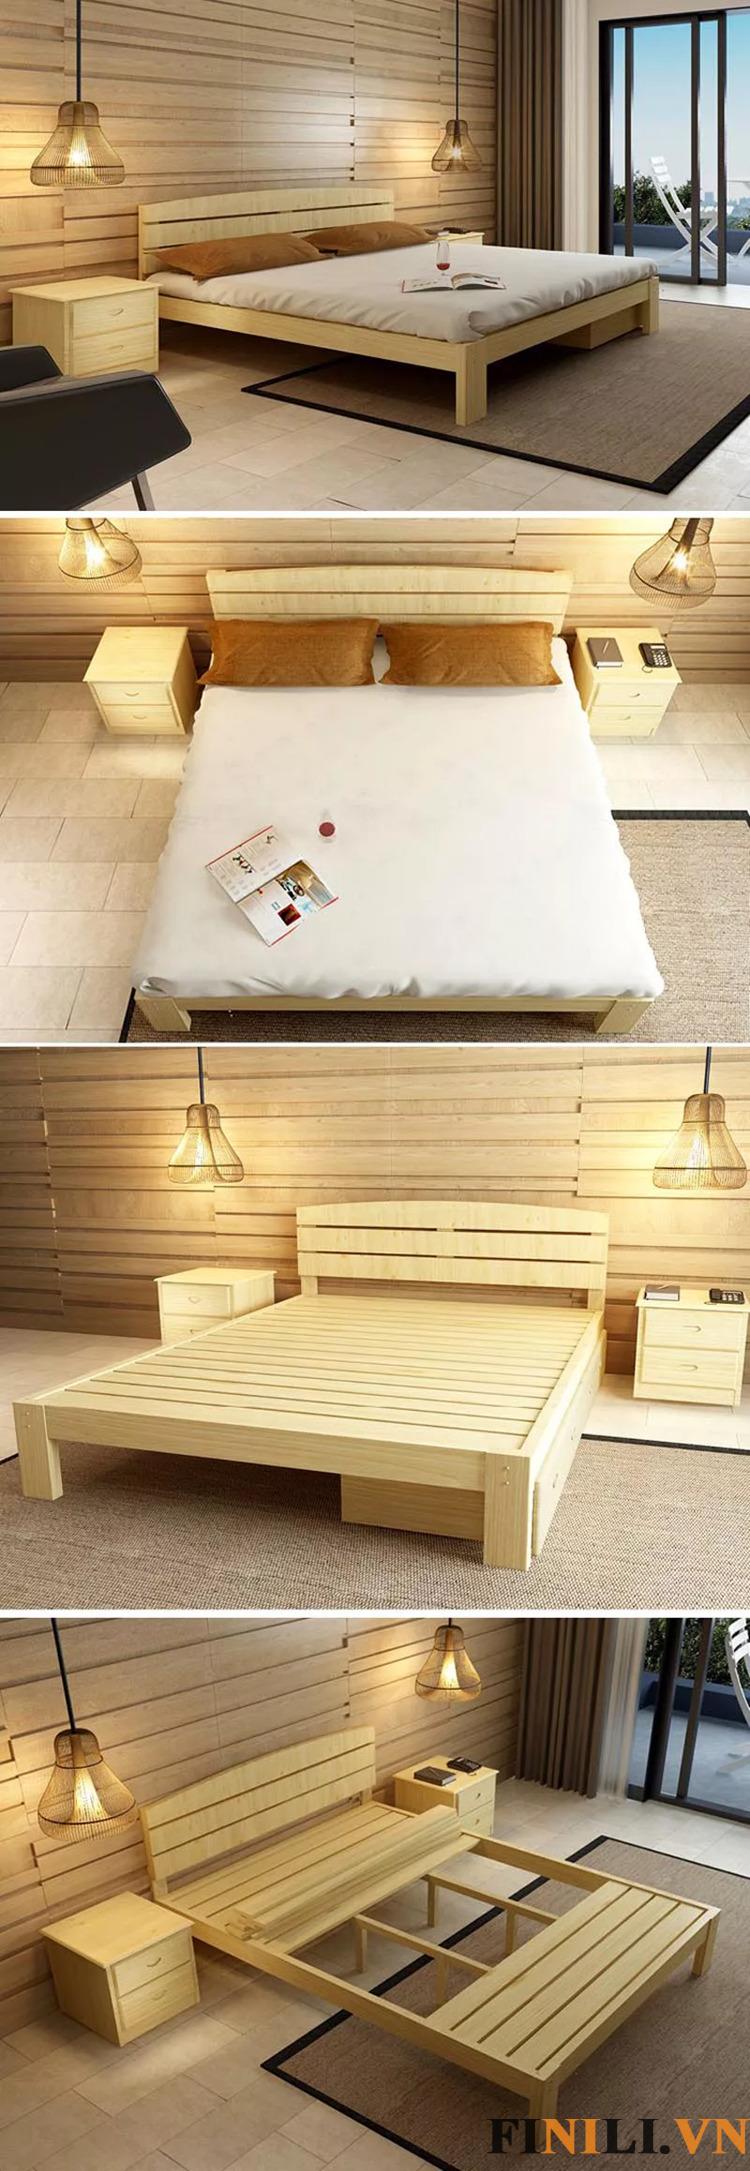 Giường ngủ là món đồ nội thất lý tưởng cho không gian sống của bạn